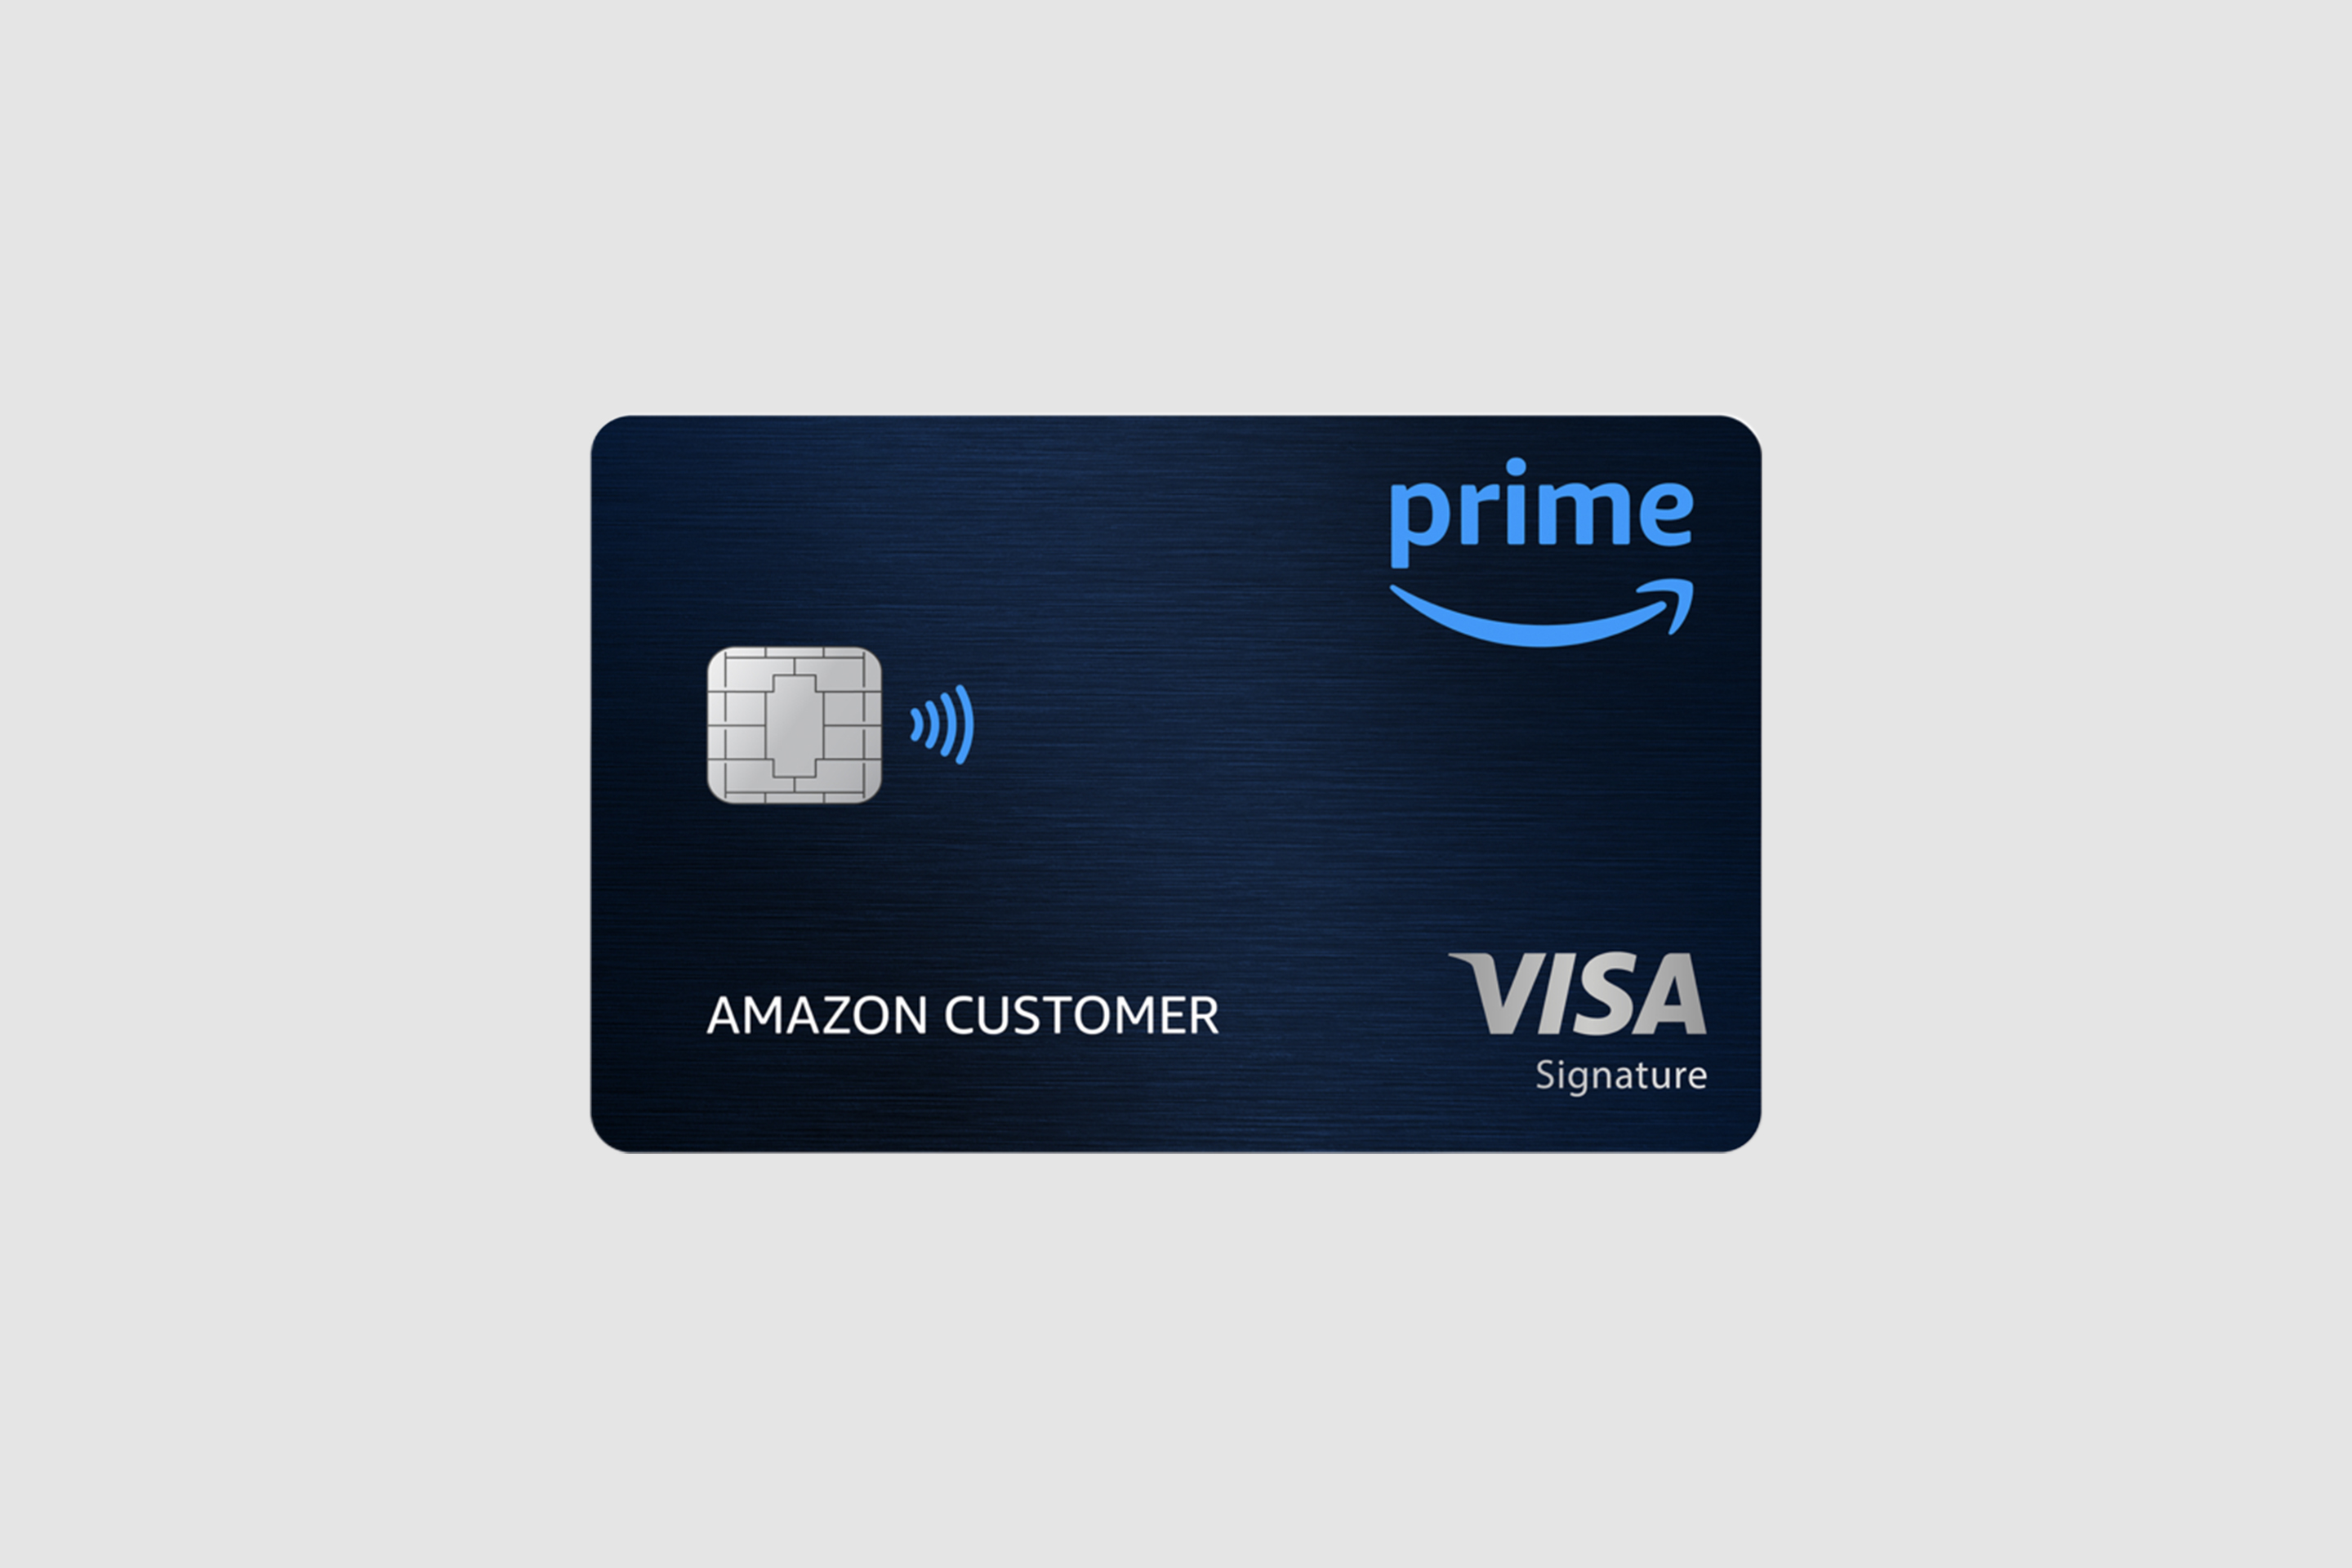 Amazon Prime Visa Credit Card